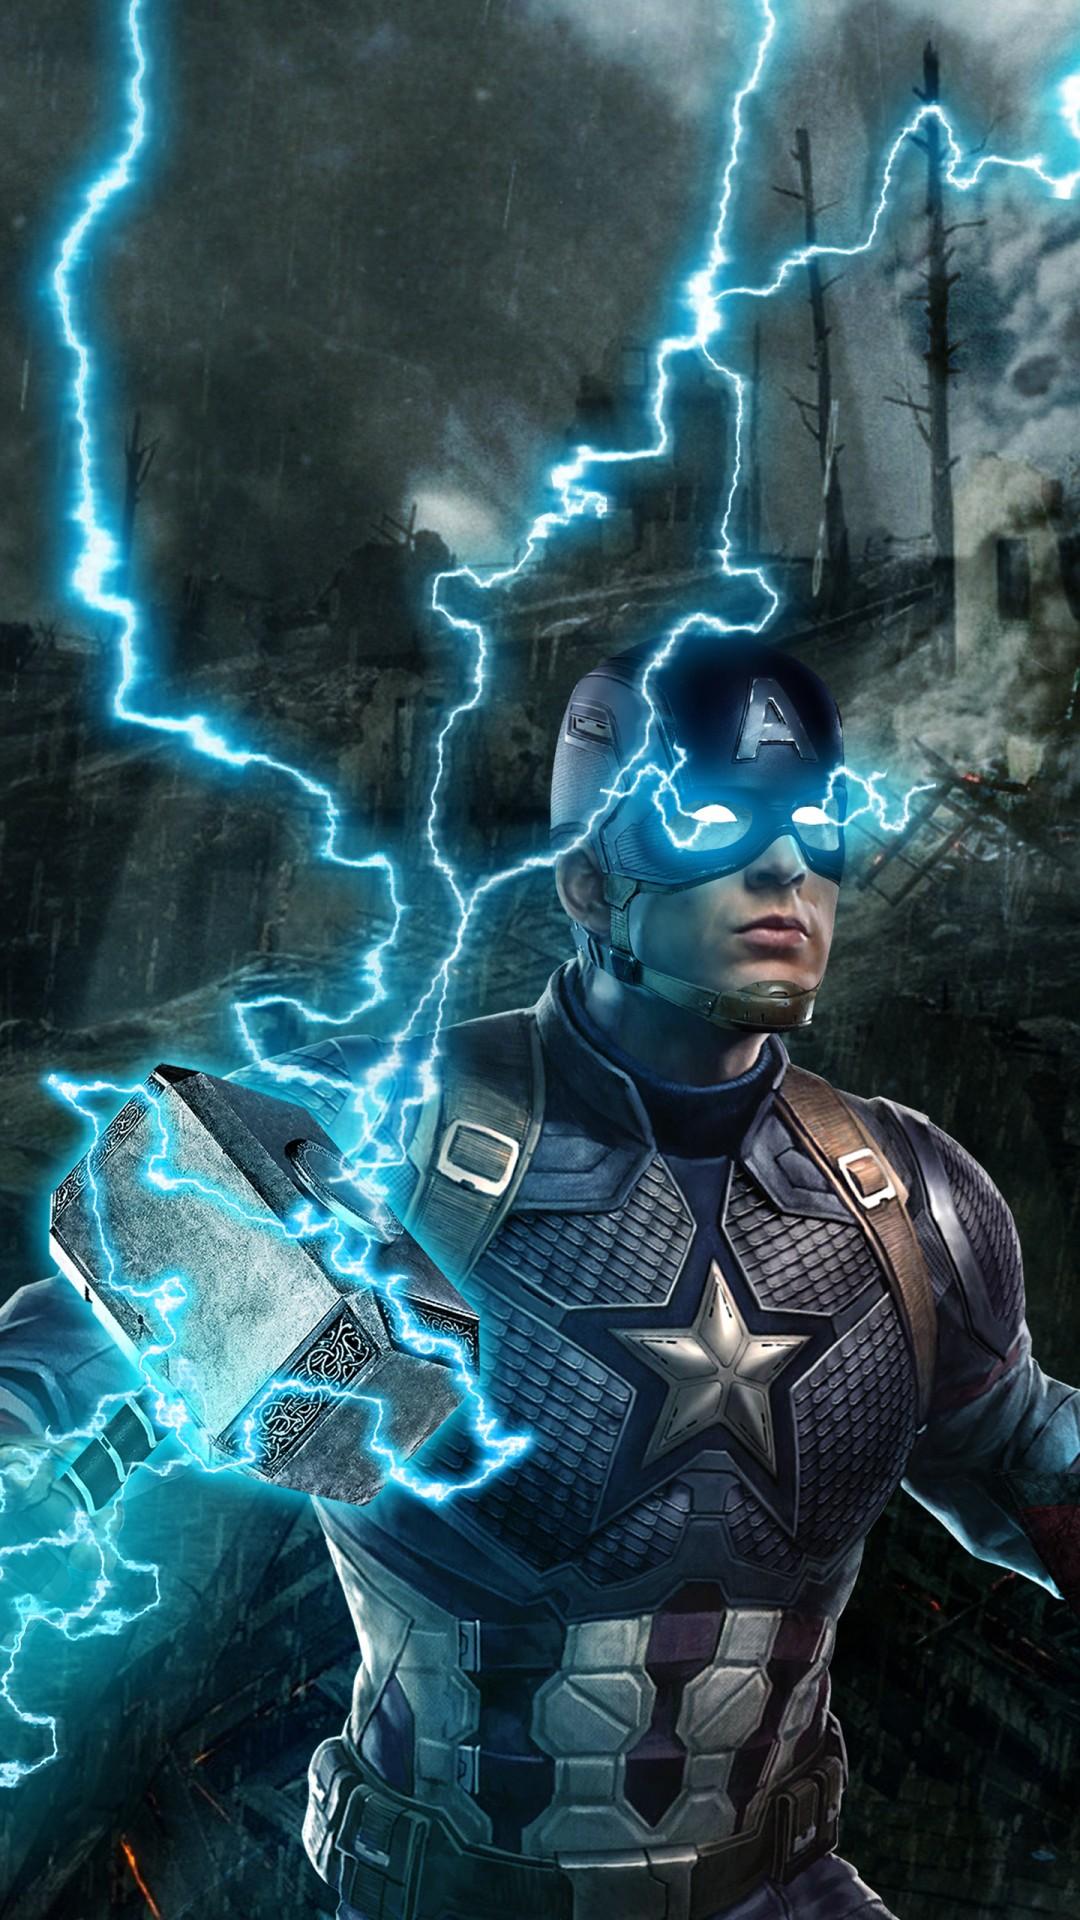 Captain America in Avengers Endgame 4K Wallpaper